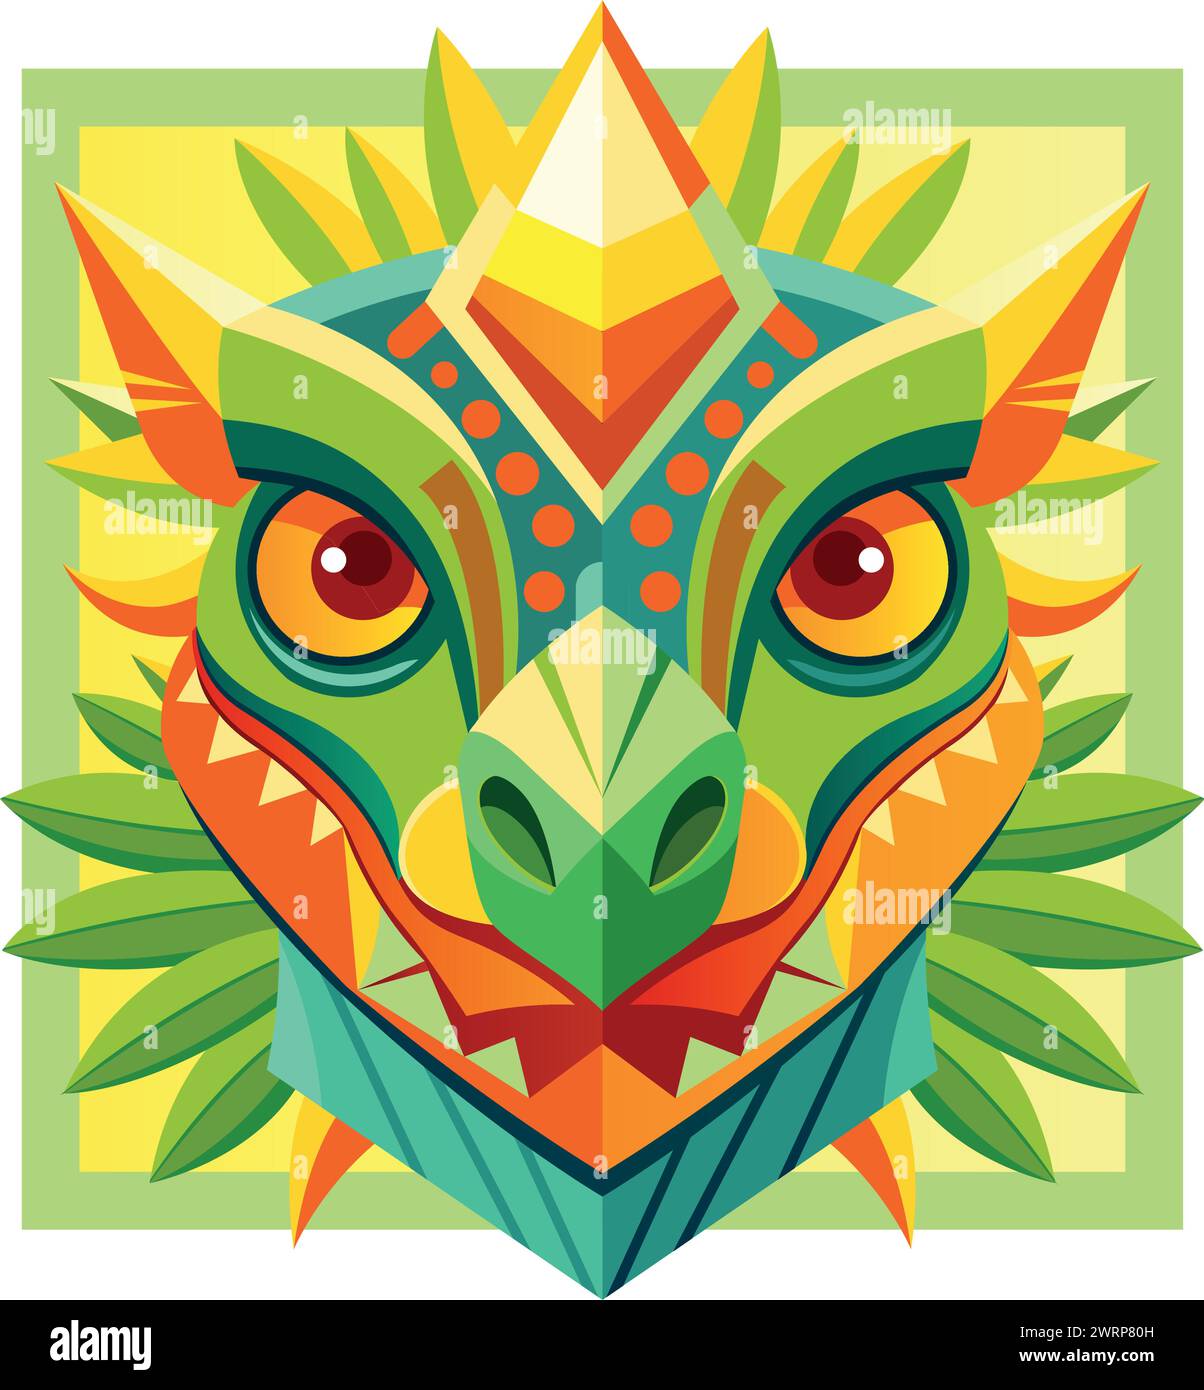 Vue de face du masque africain en forme de tête de crocodile dans un style géométrique avec des couleurs chaudes. Image vectorielle Illustration de Vecteur